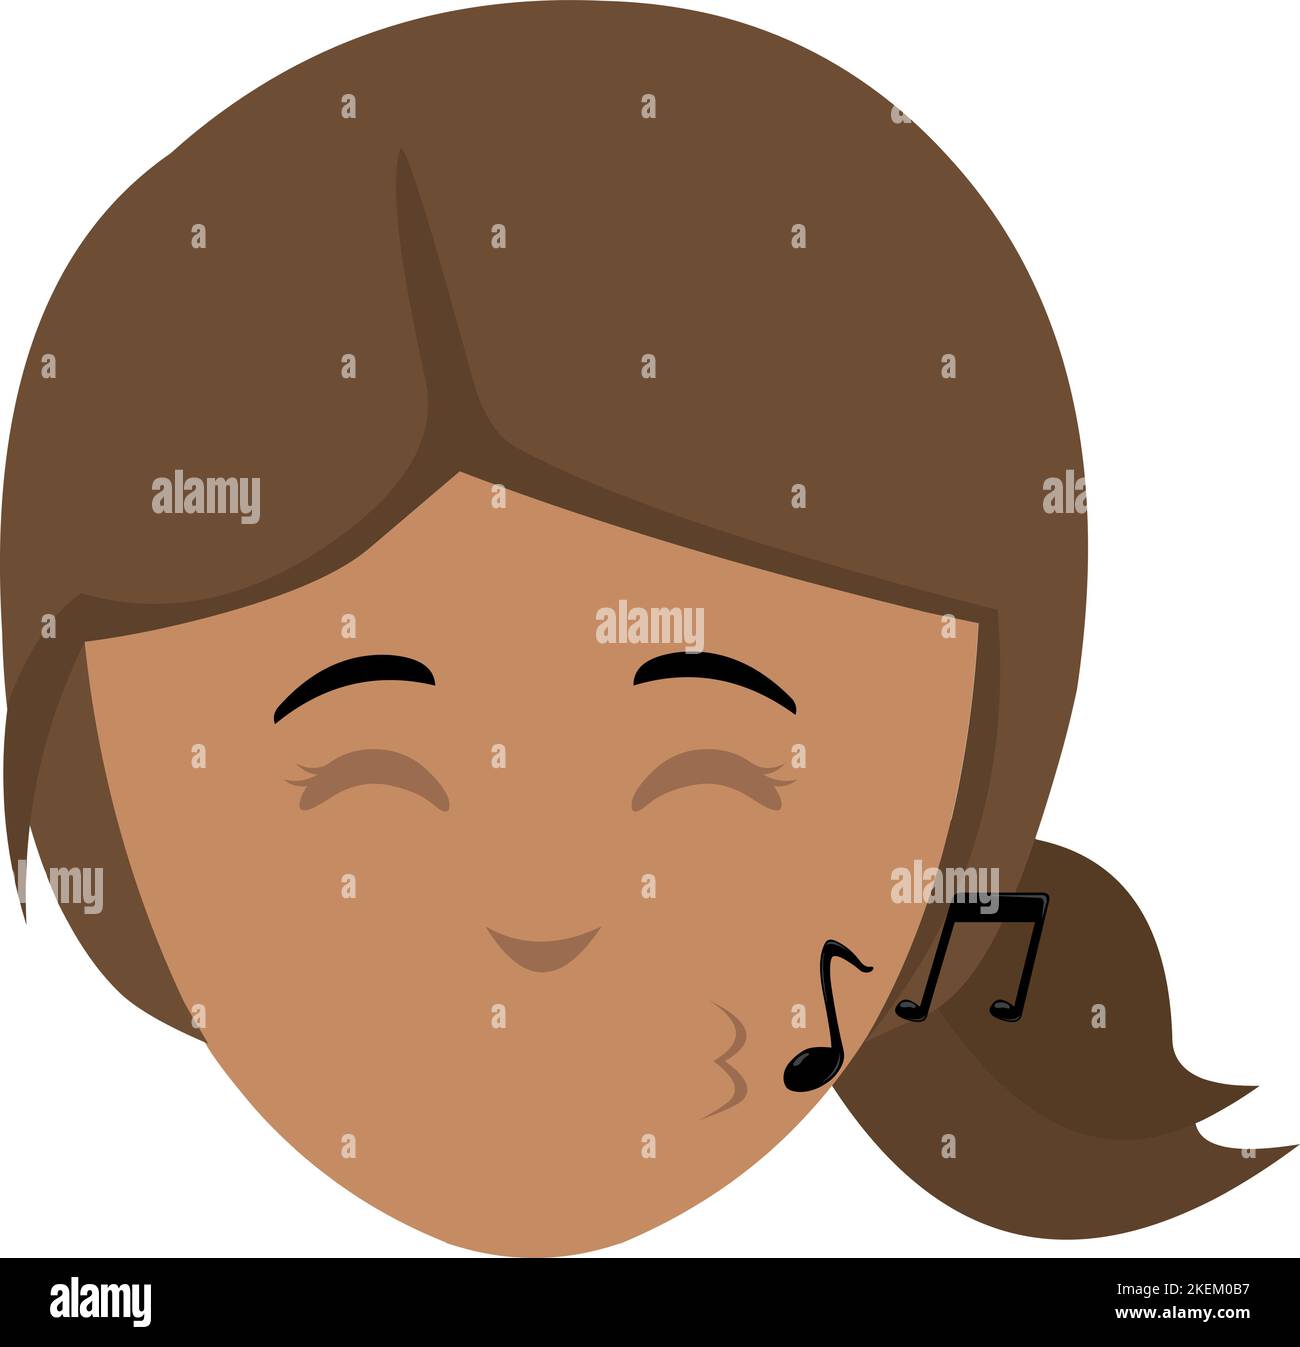 Illustrazione vettoriale del volto di una donna cartoon che fischia con note musicali Illustrazione Vettoriale